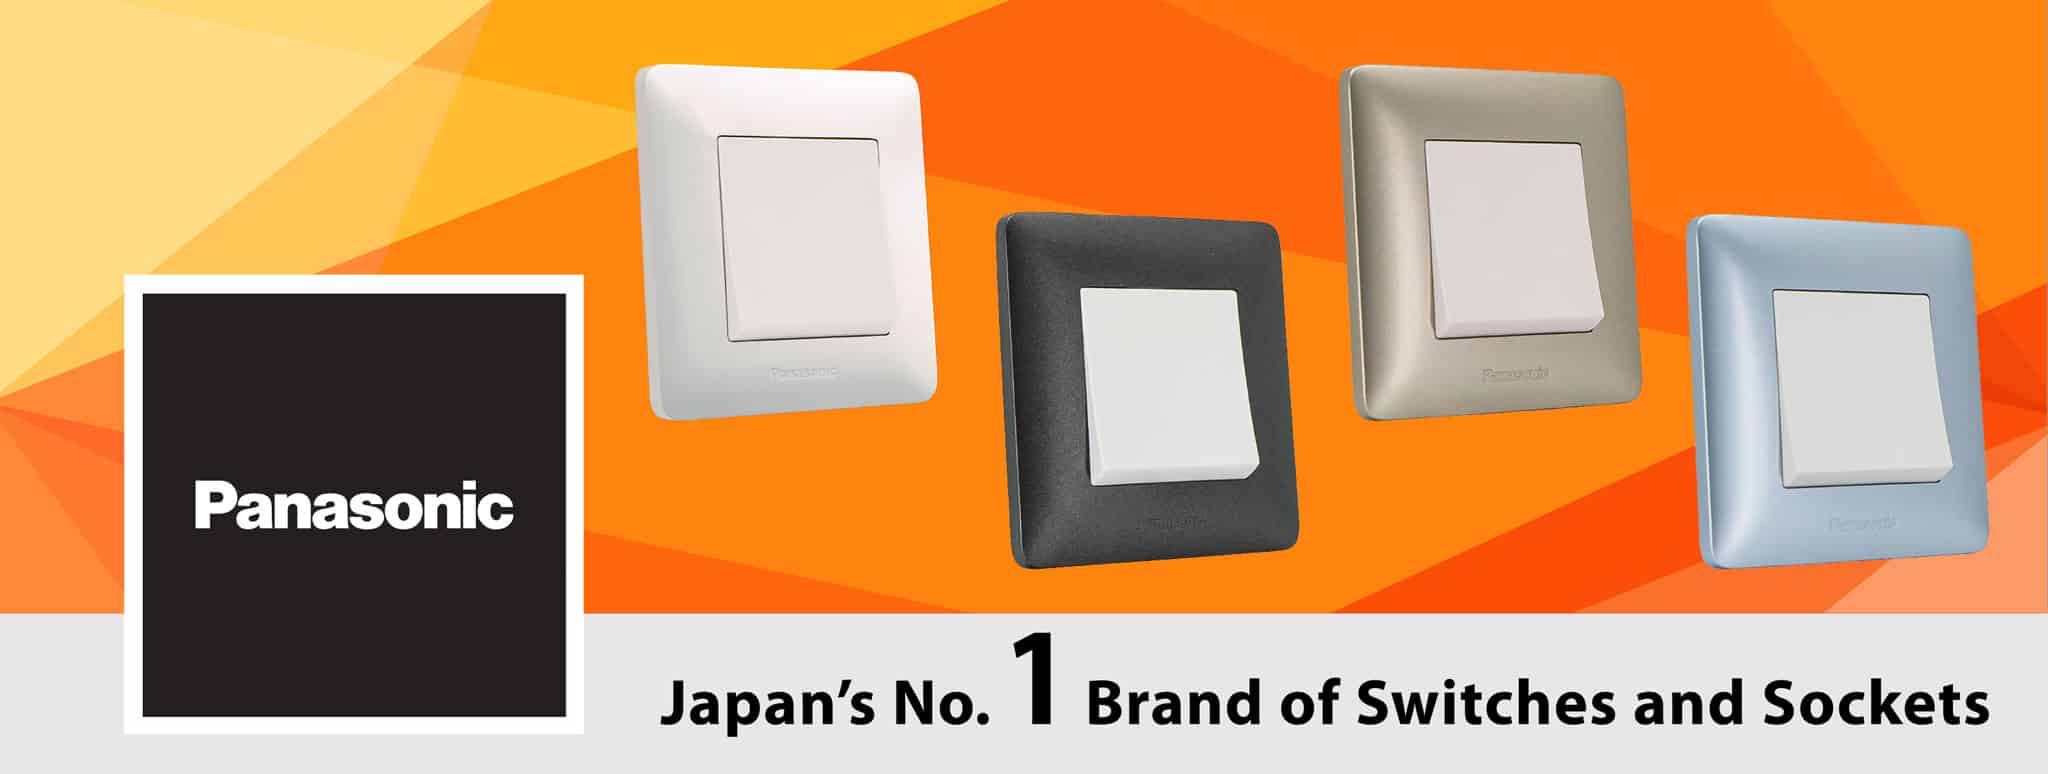 Panasonic switches